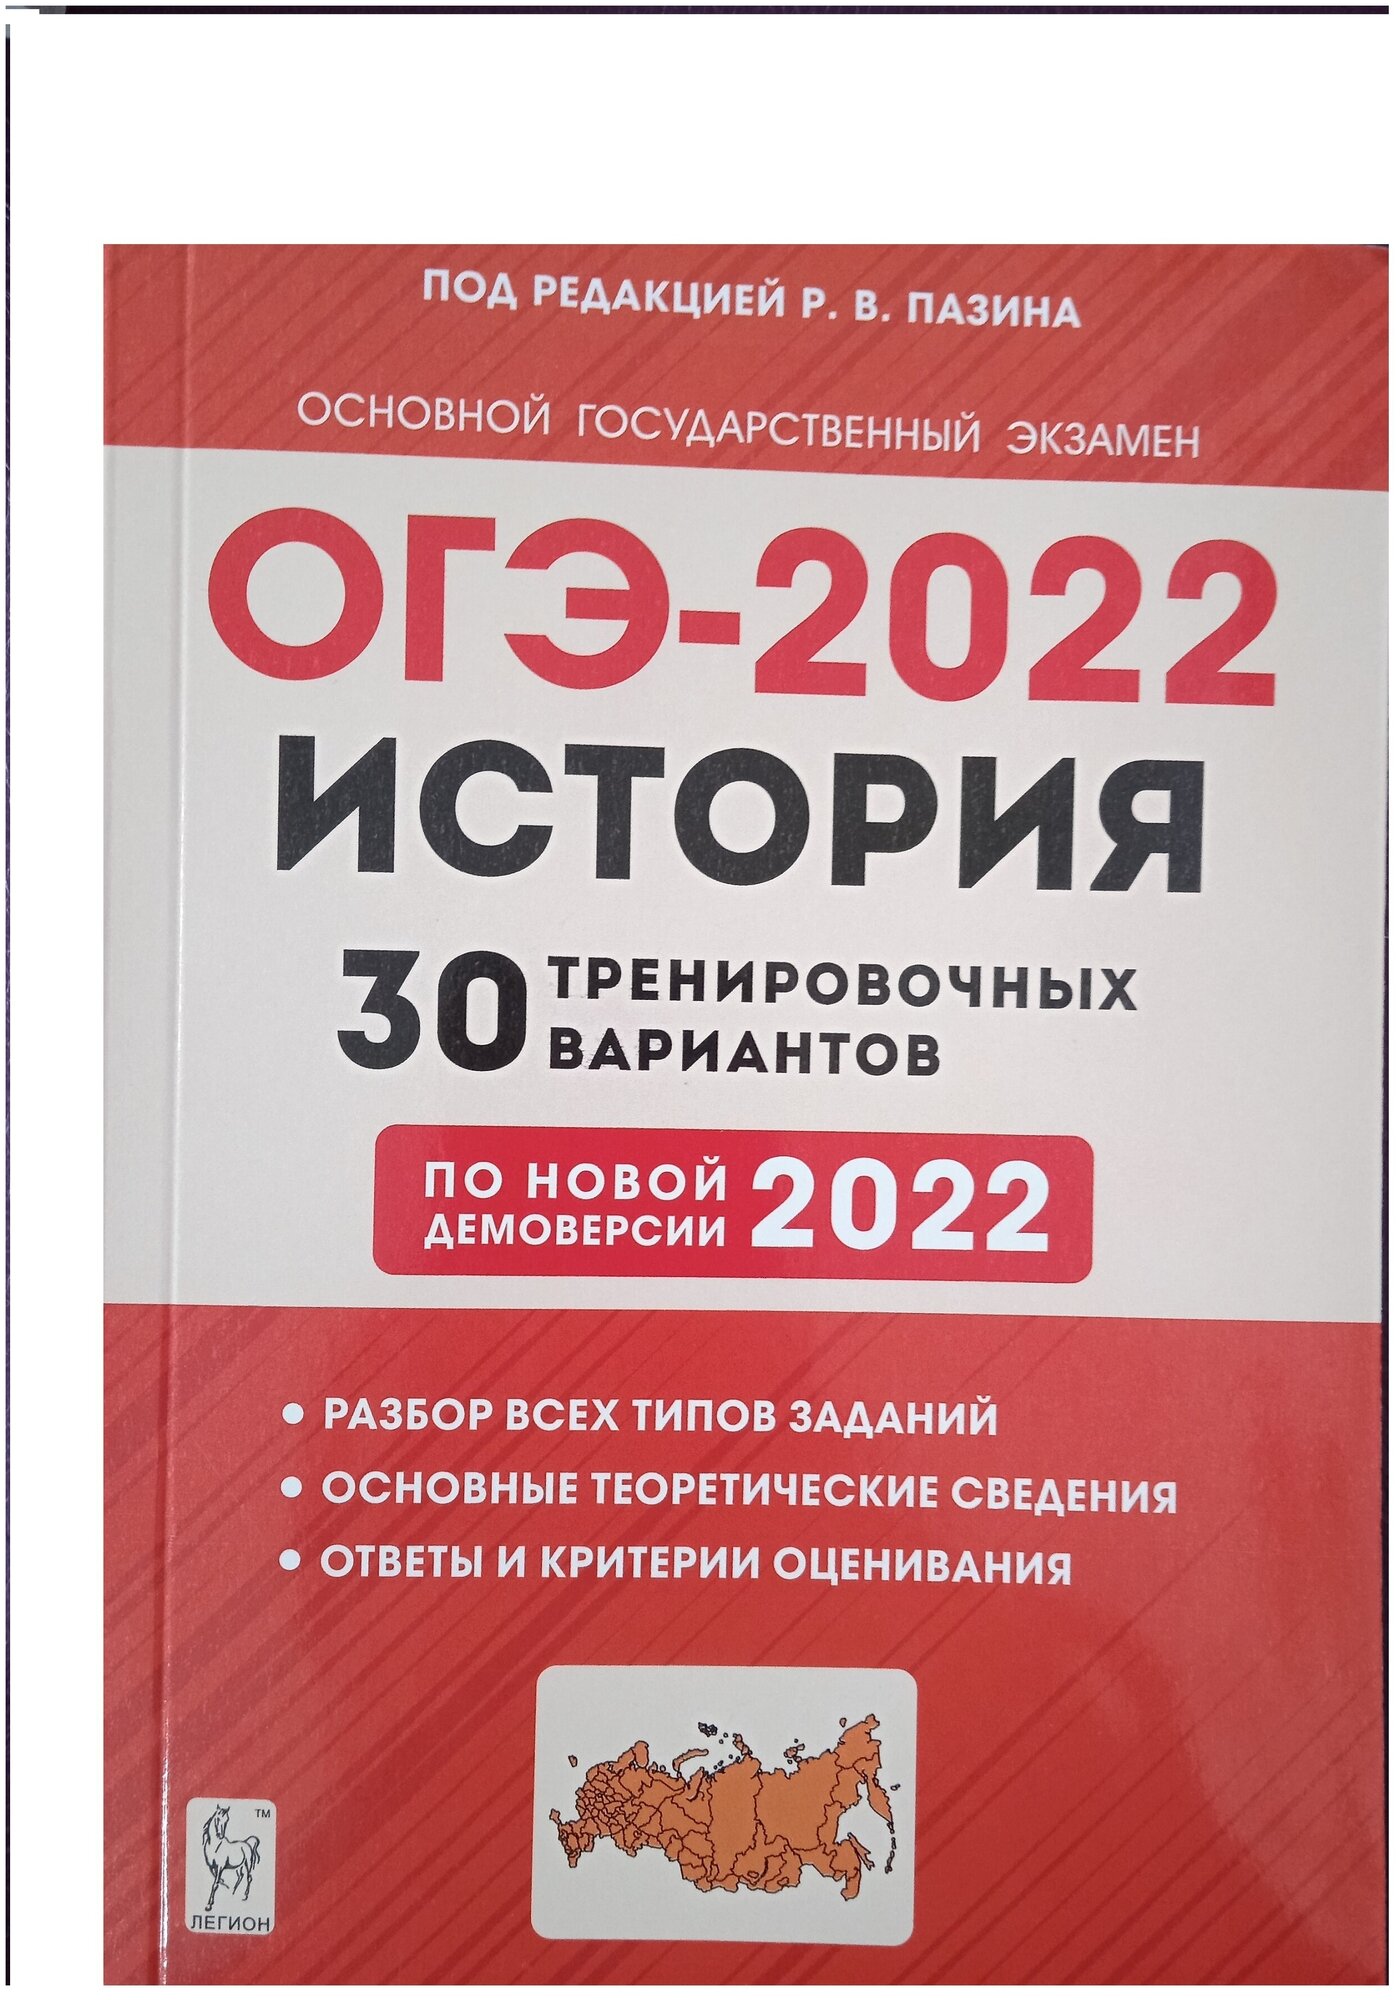 ОГЭ 2022 История. 9 класс. 30 тренировочных вариантов по демоверсии 2022 года - фото №1